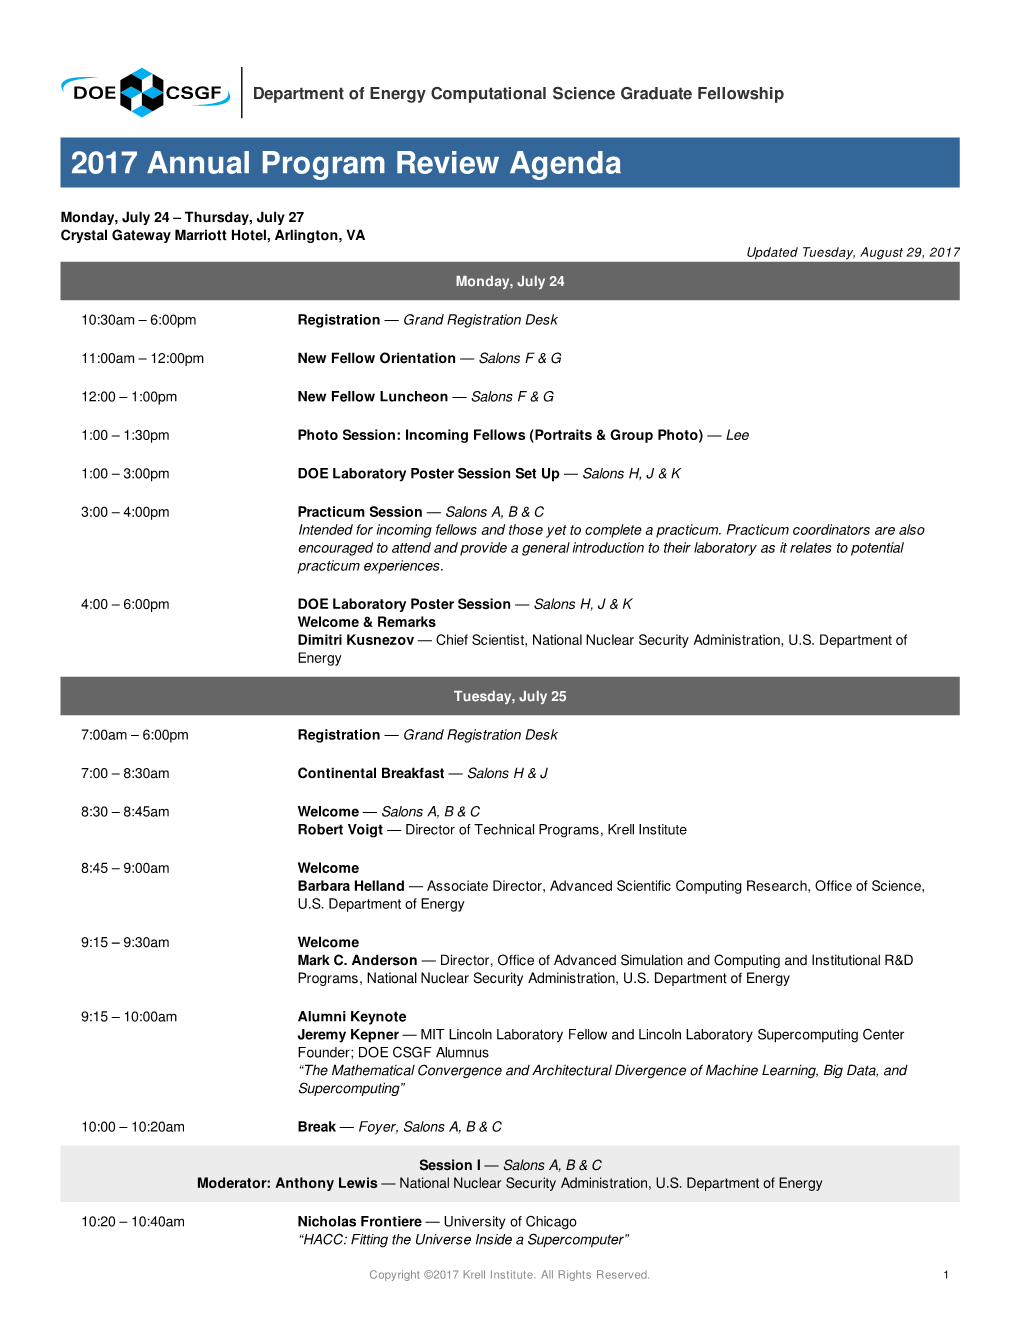 CSGF Annual Program Review Agenda